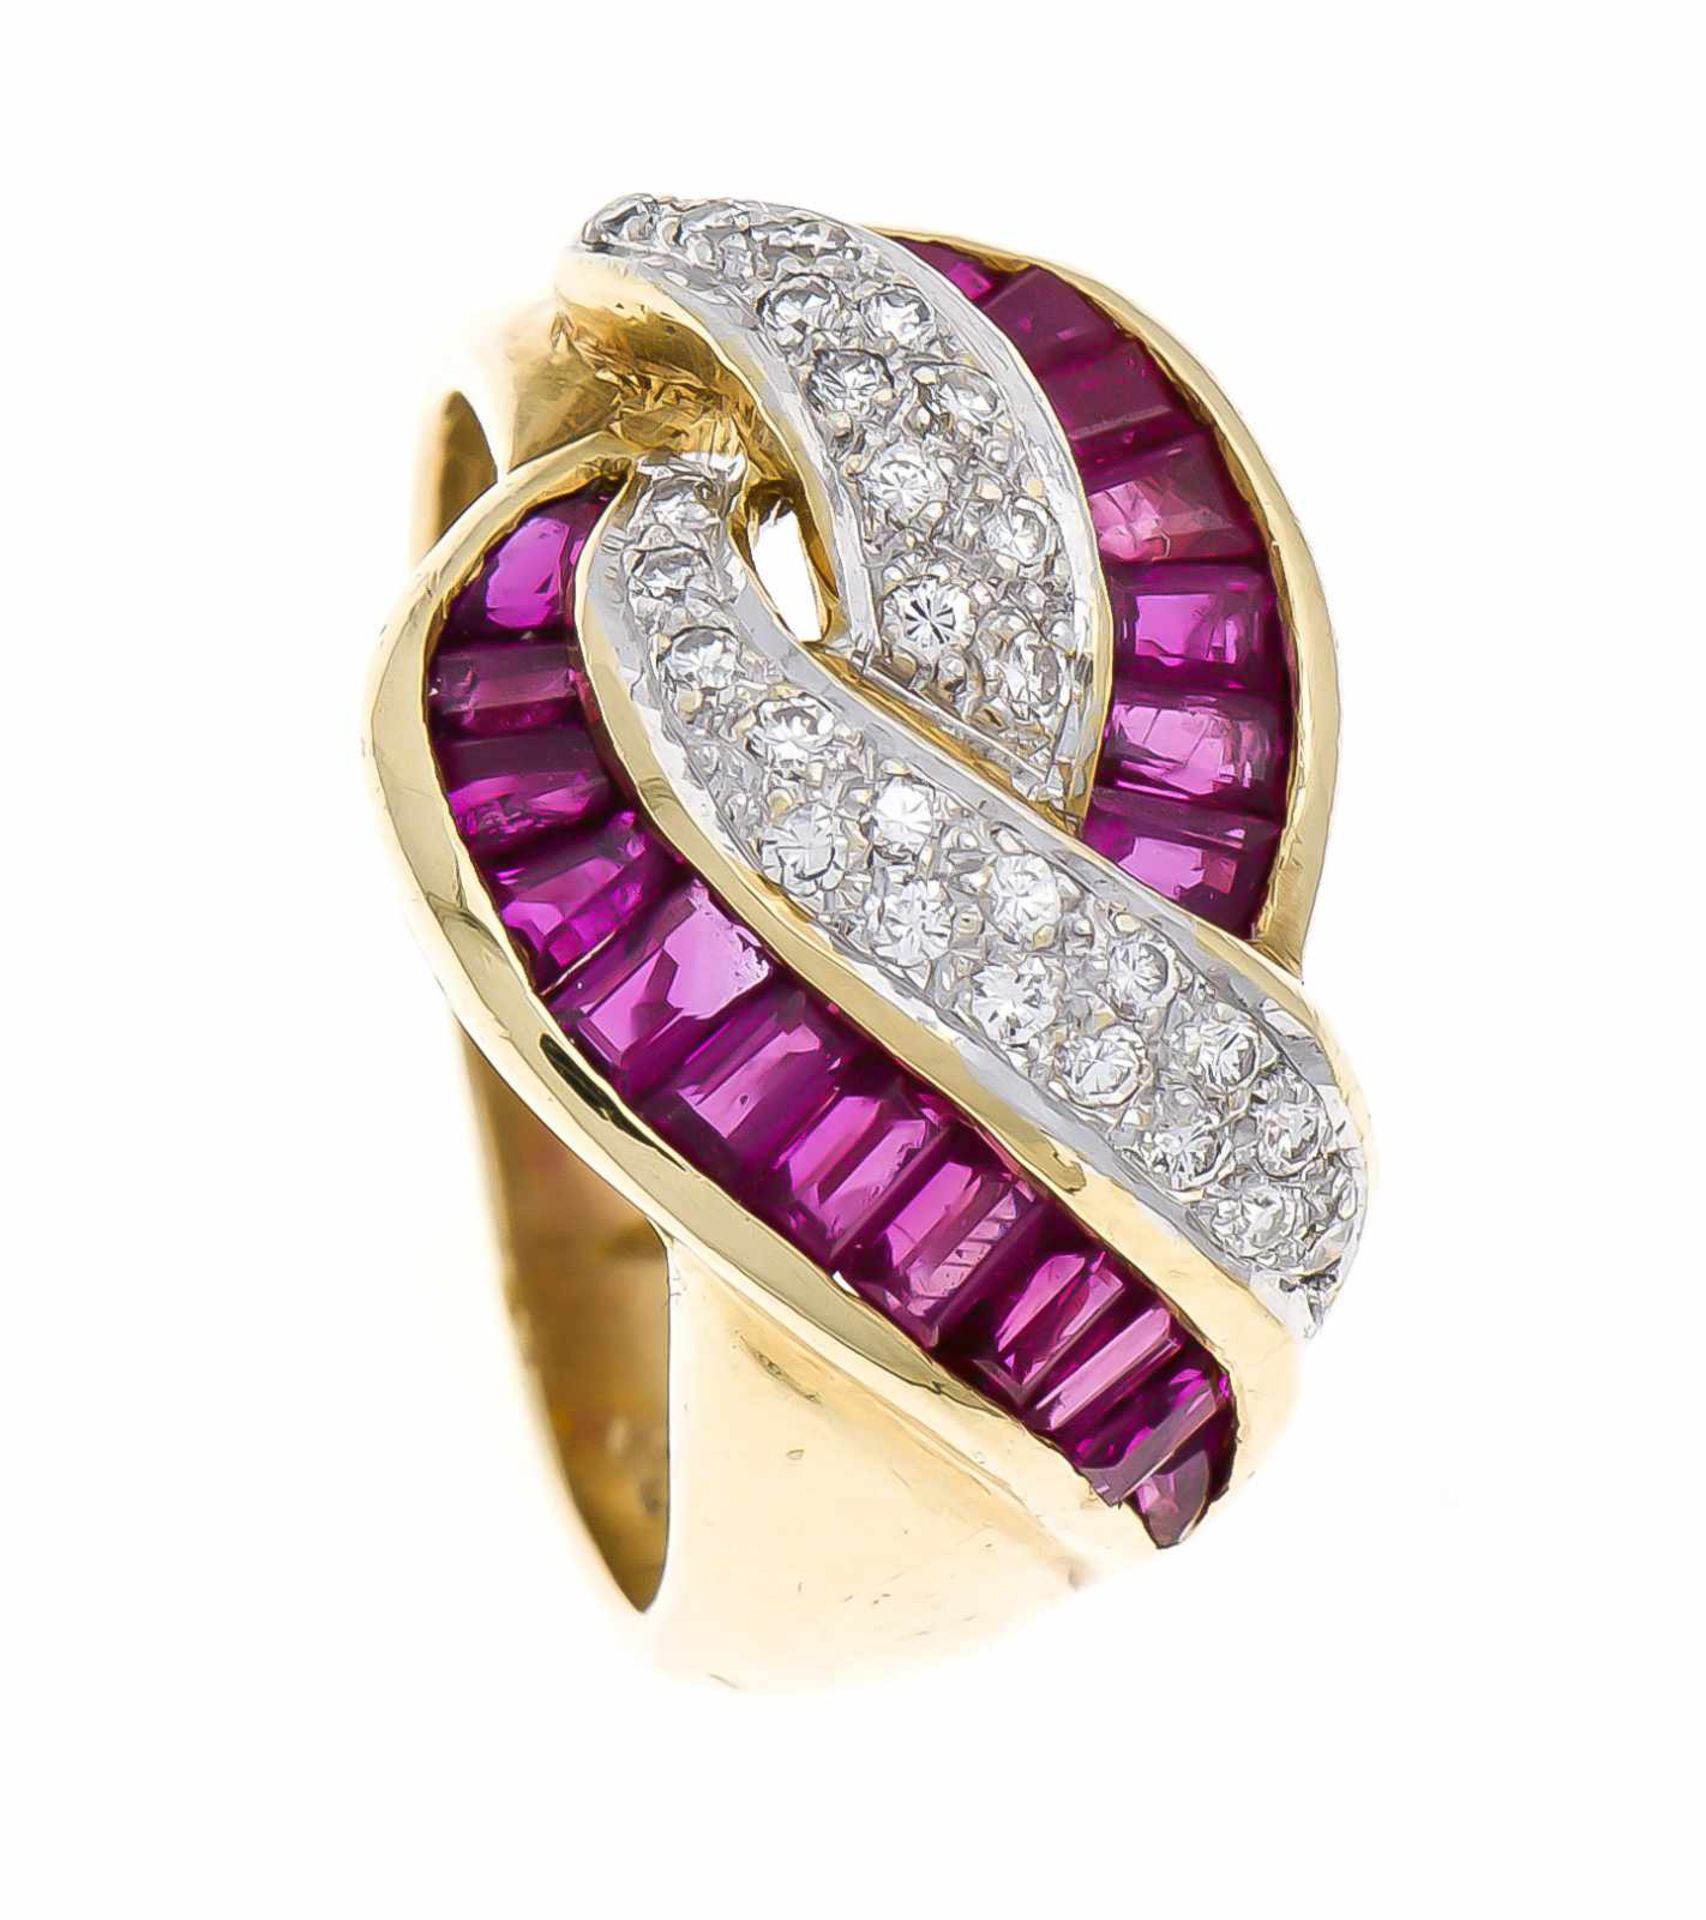 Rubin-Brillant-Ring GG/WG 750/000 mit fac. Rubinbaguettes in guter Farbe und Reinheit sowie